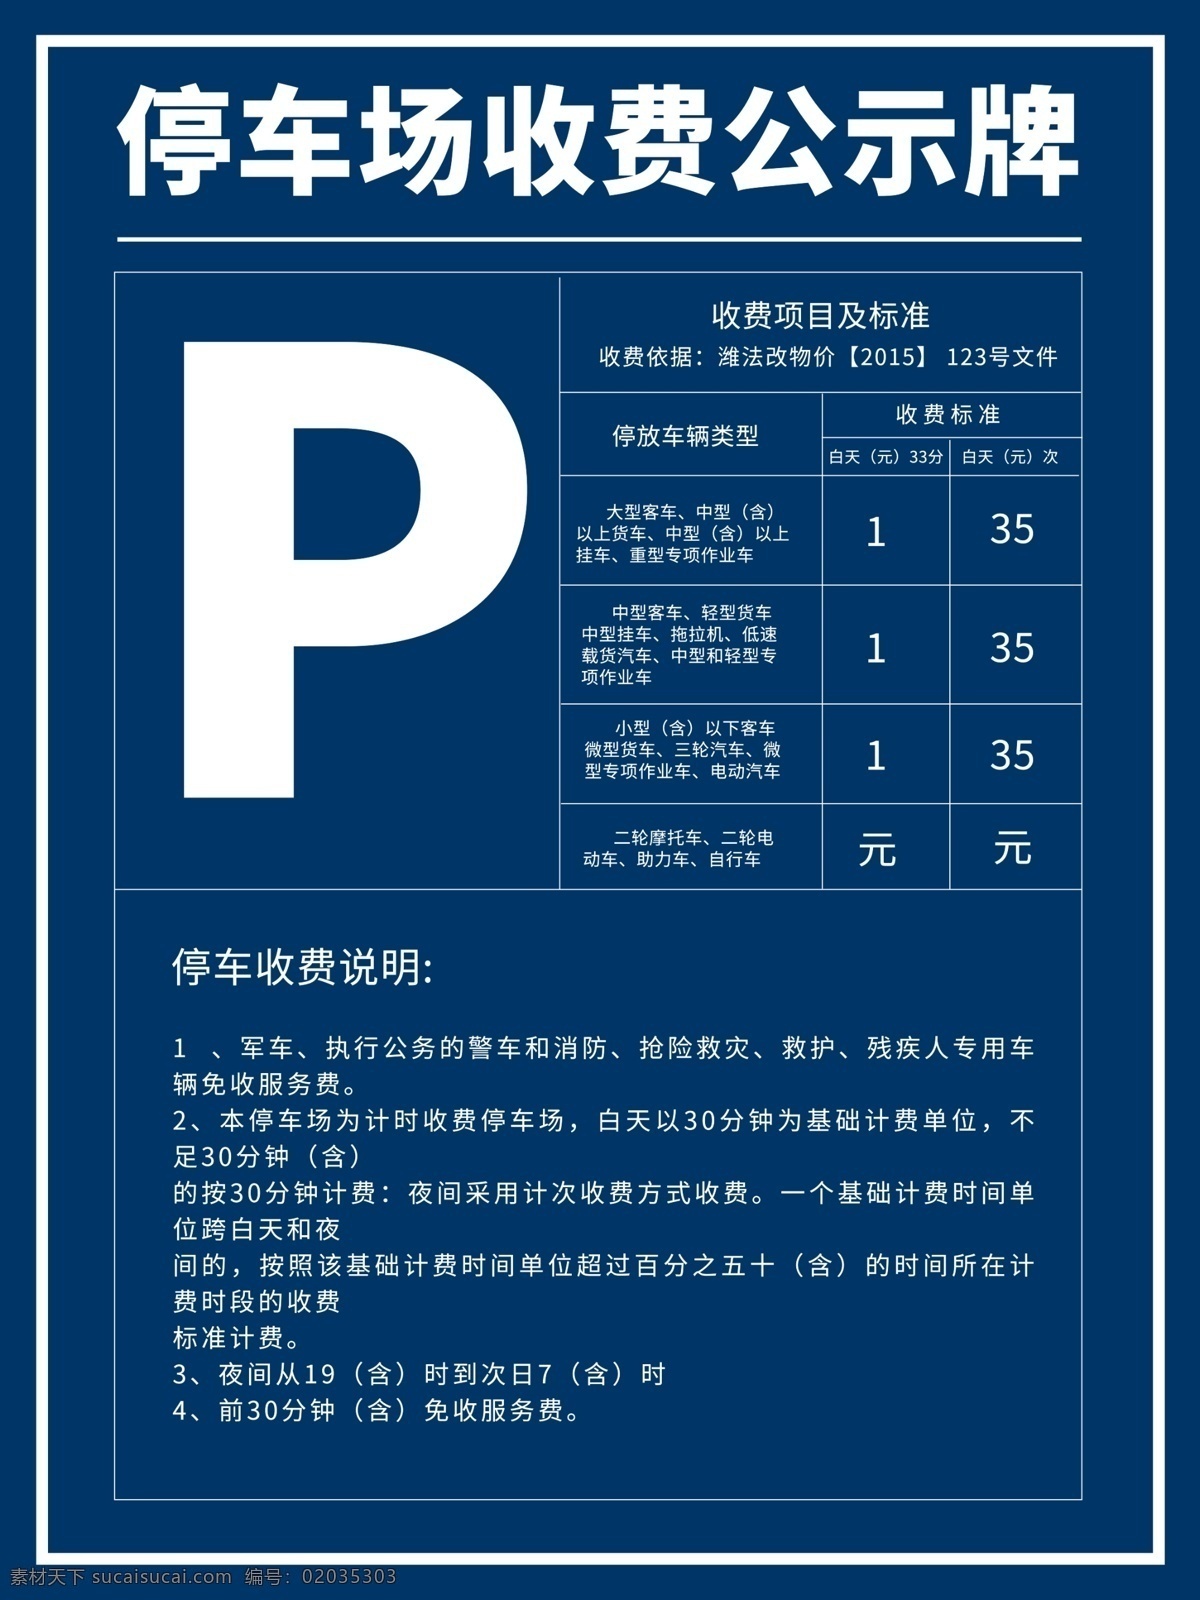 停车场 收费 公示 收费项目 说明